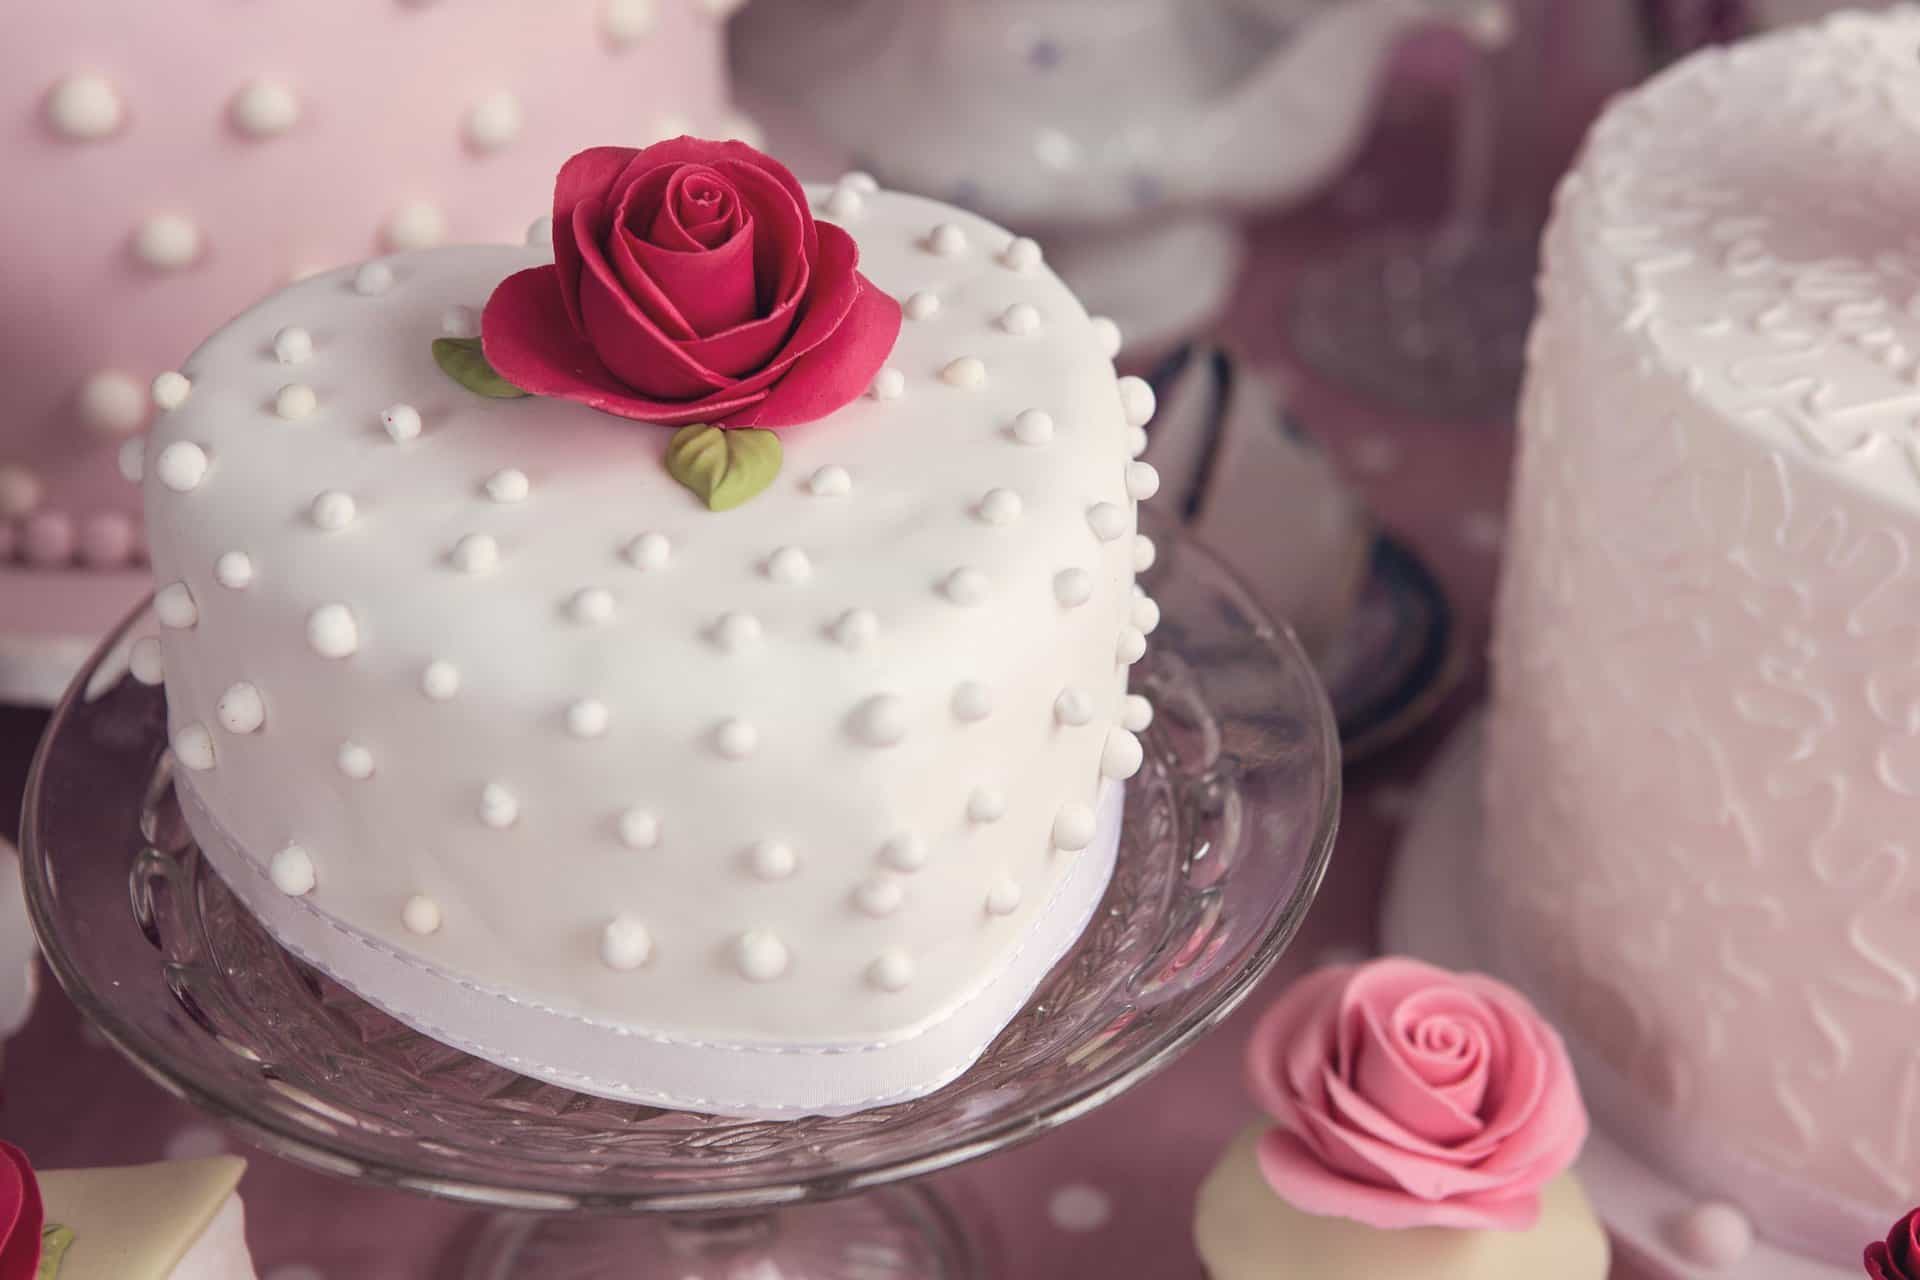 Luxury wedding cakes – Valentine’s style